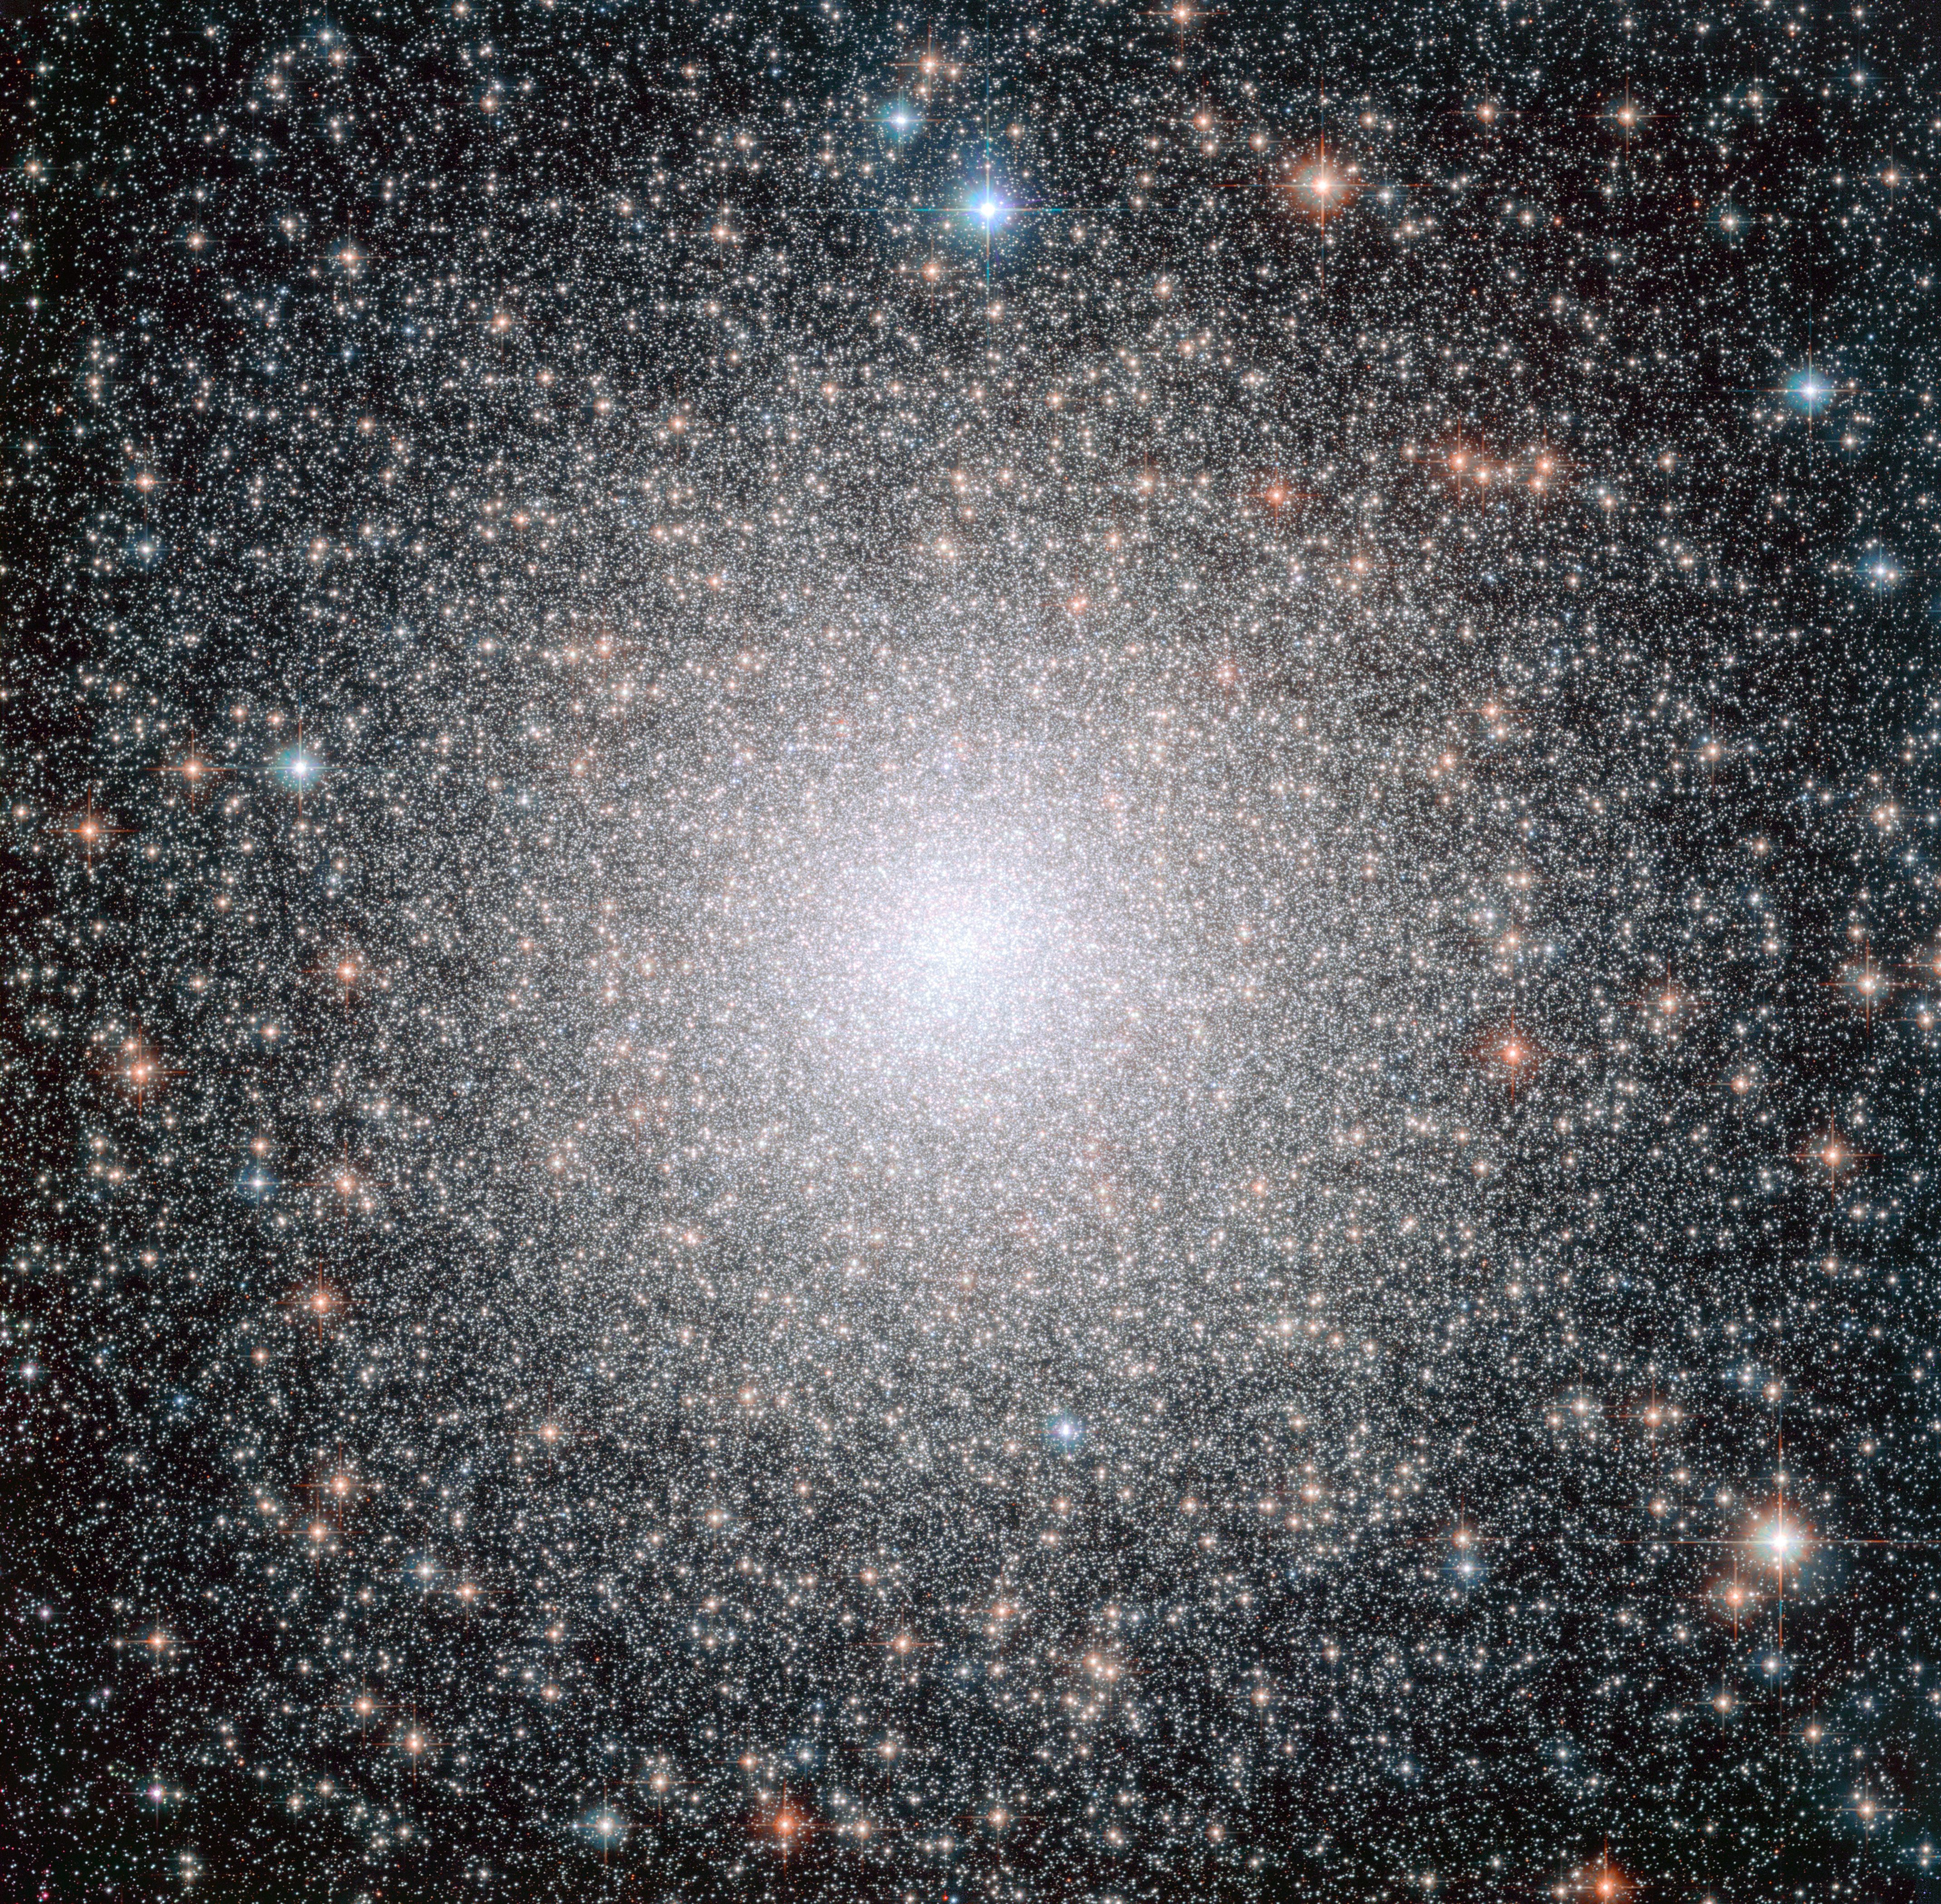 Star Clusters Names, Globular Cluster vs Open Cluster